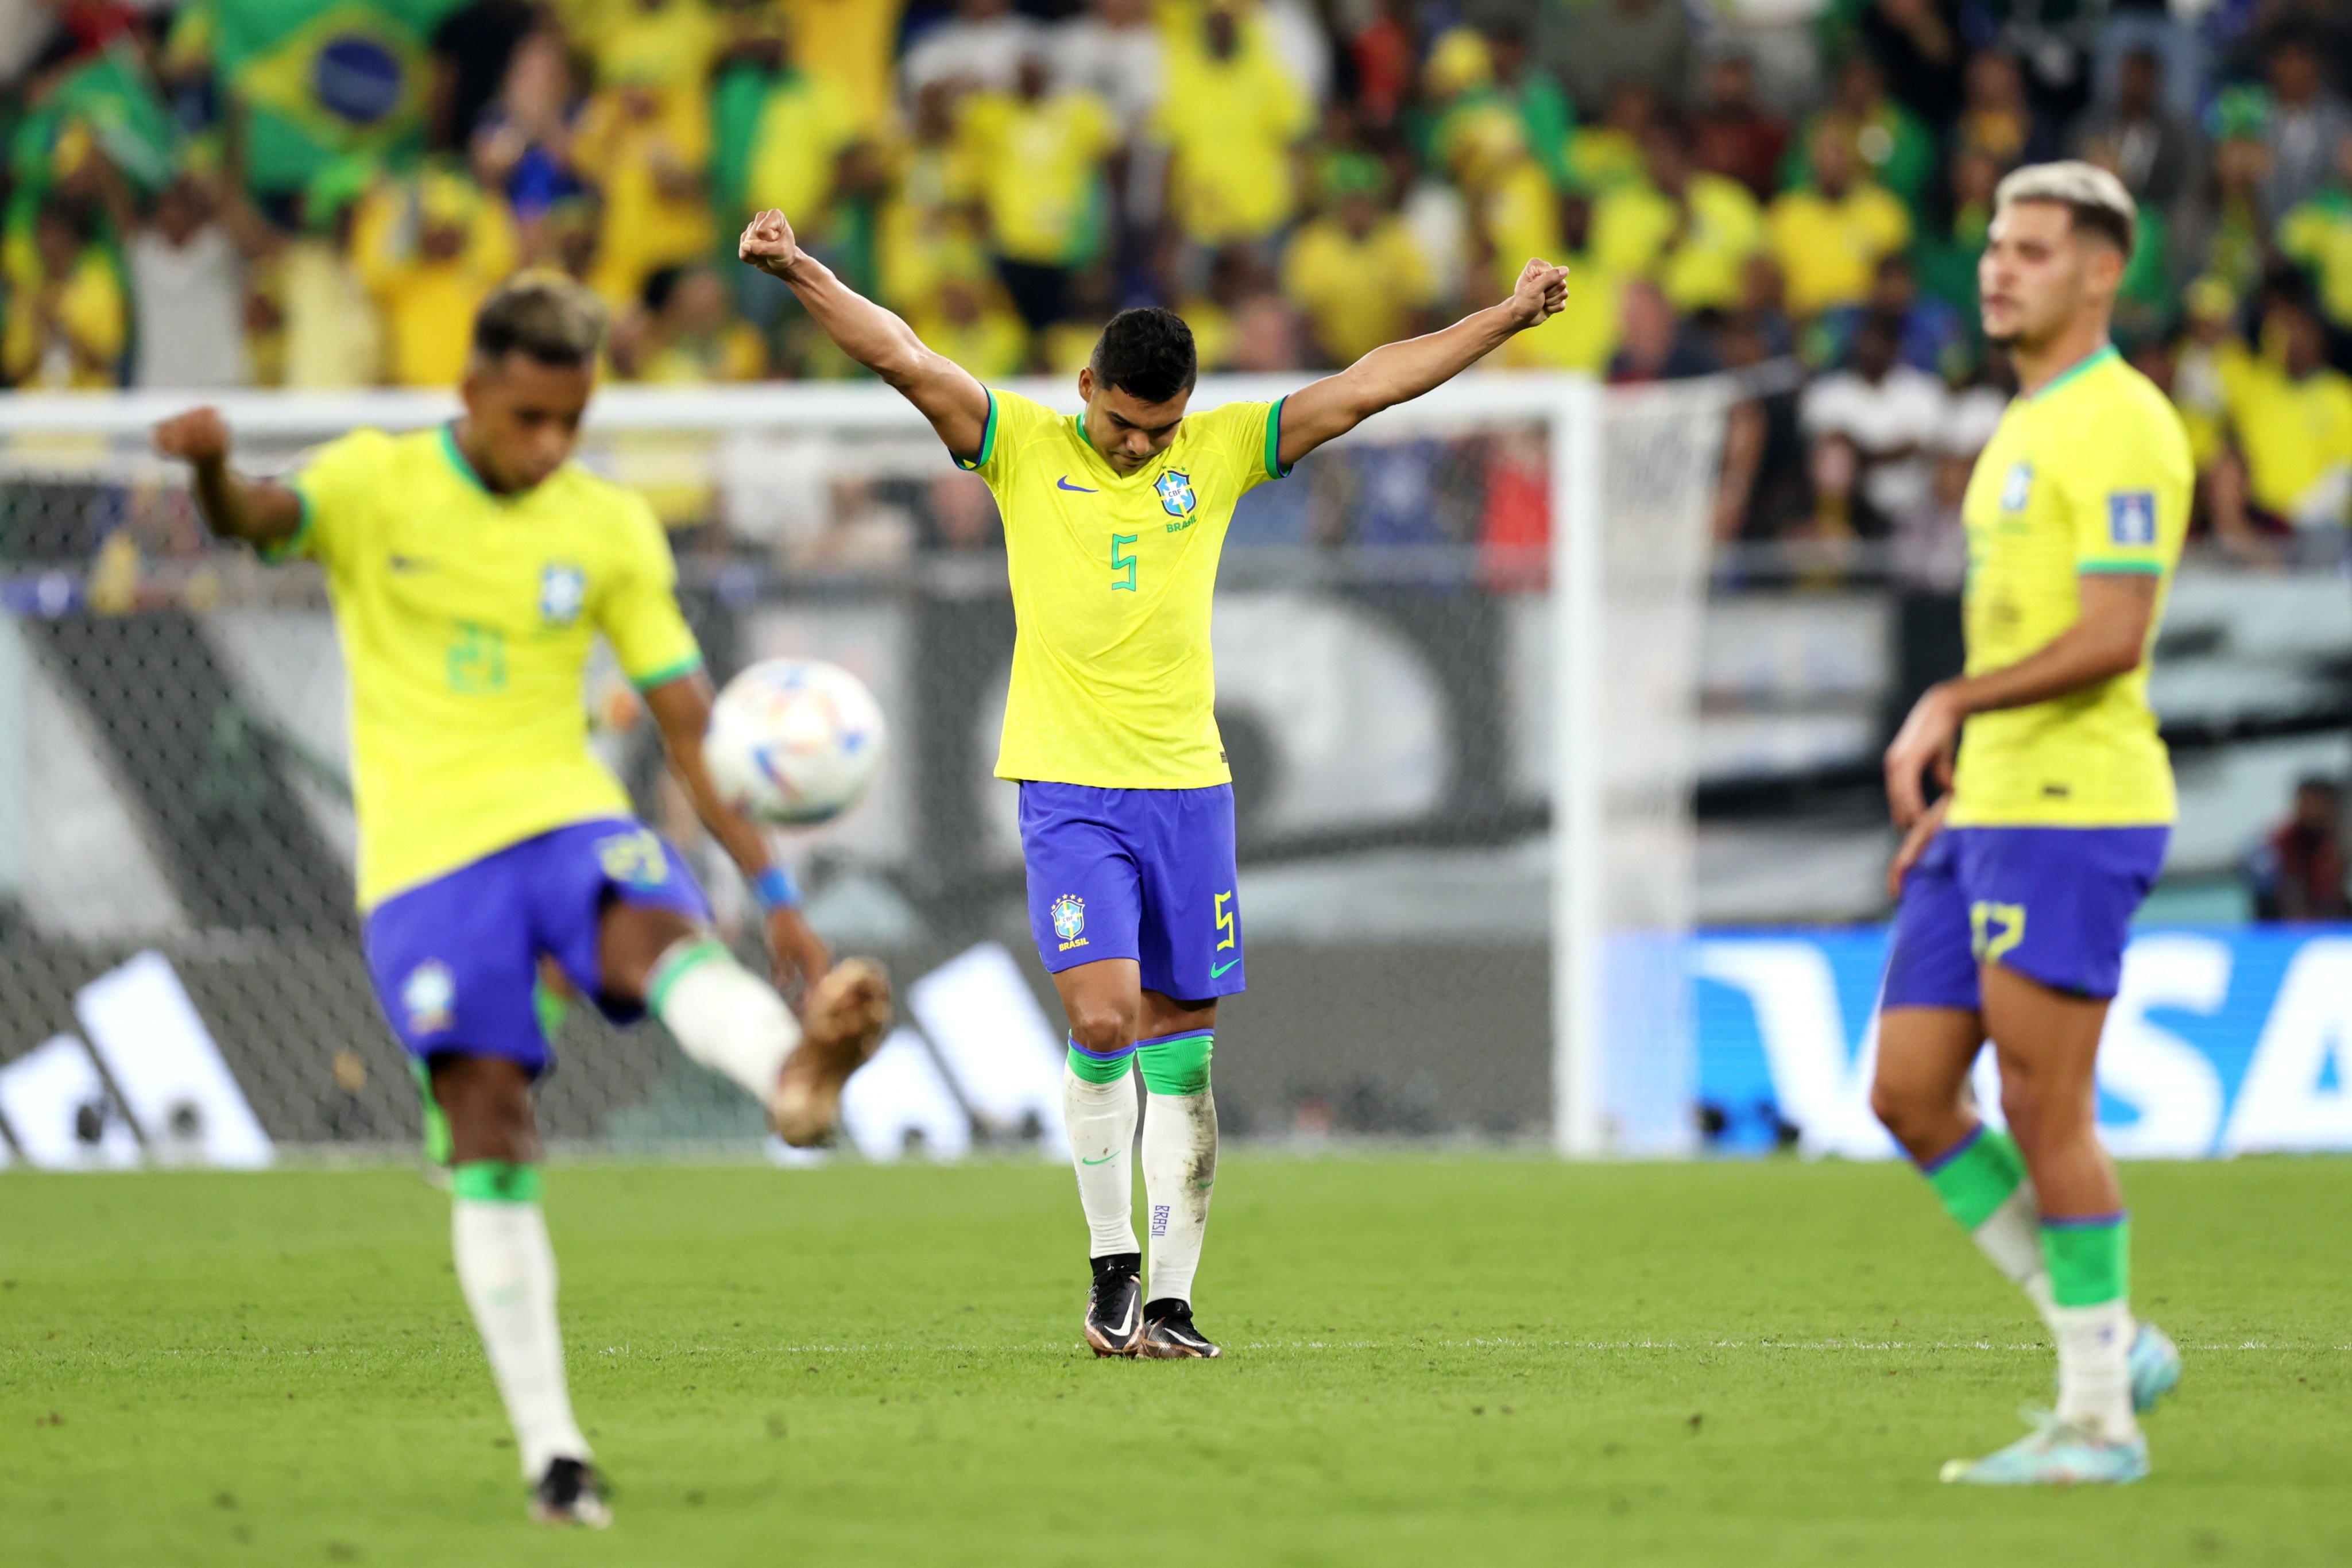 Báo quốc tế nói về chiến thắng của Brazil và người hùng Casemiro